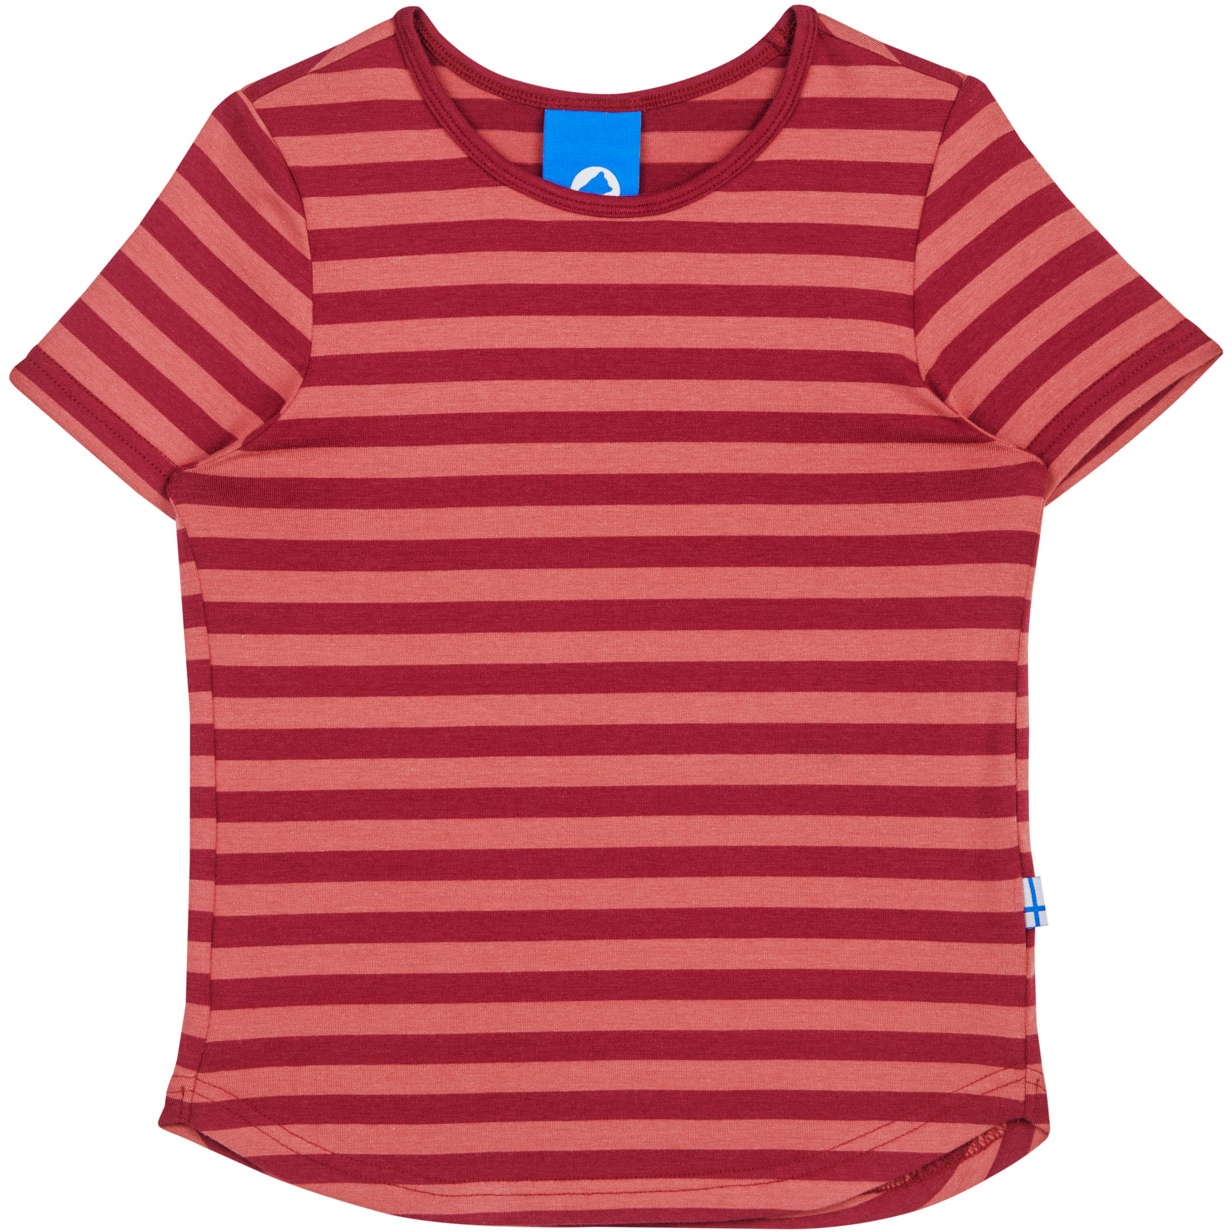 Produktbild von Finkid MAALARI Kinder Jersey T-Shirt - beet red/rose